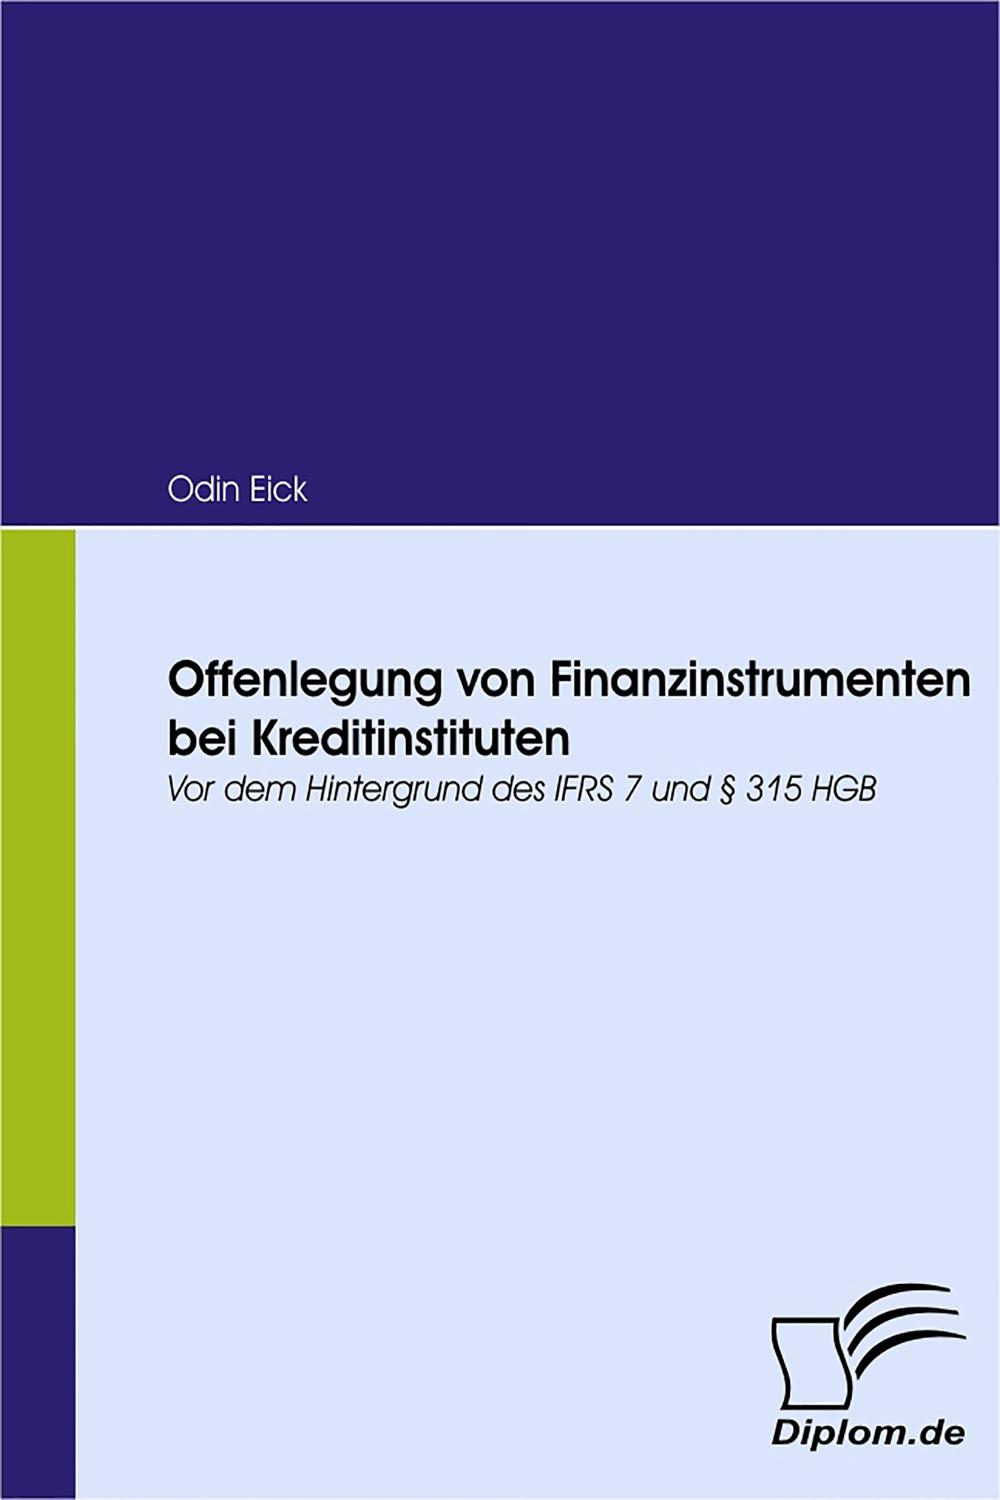 Offenlegung von Finanzinstrumenten bei Kreditinstituten - Odin Eick